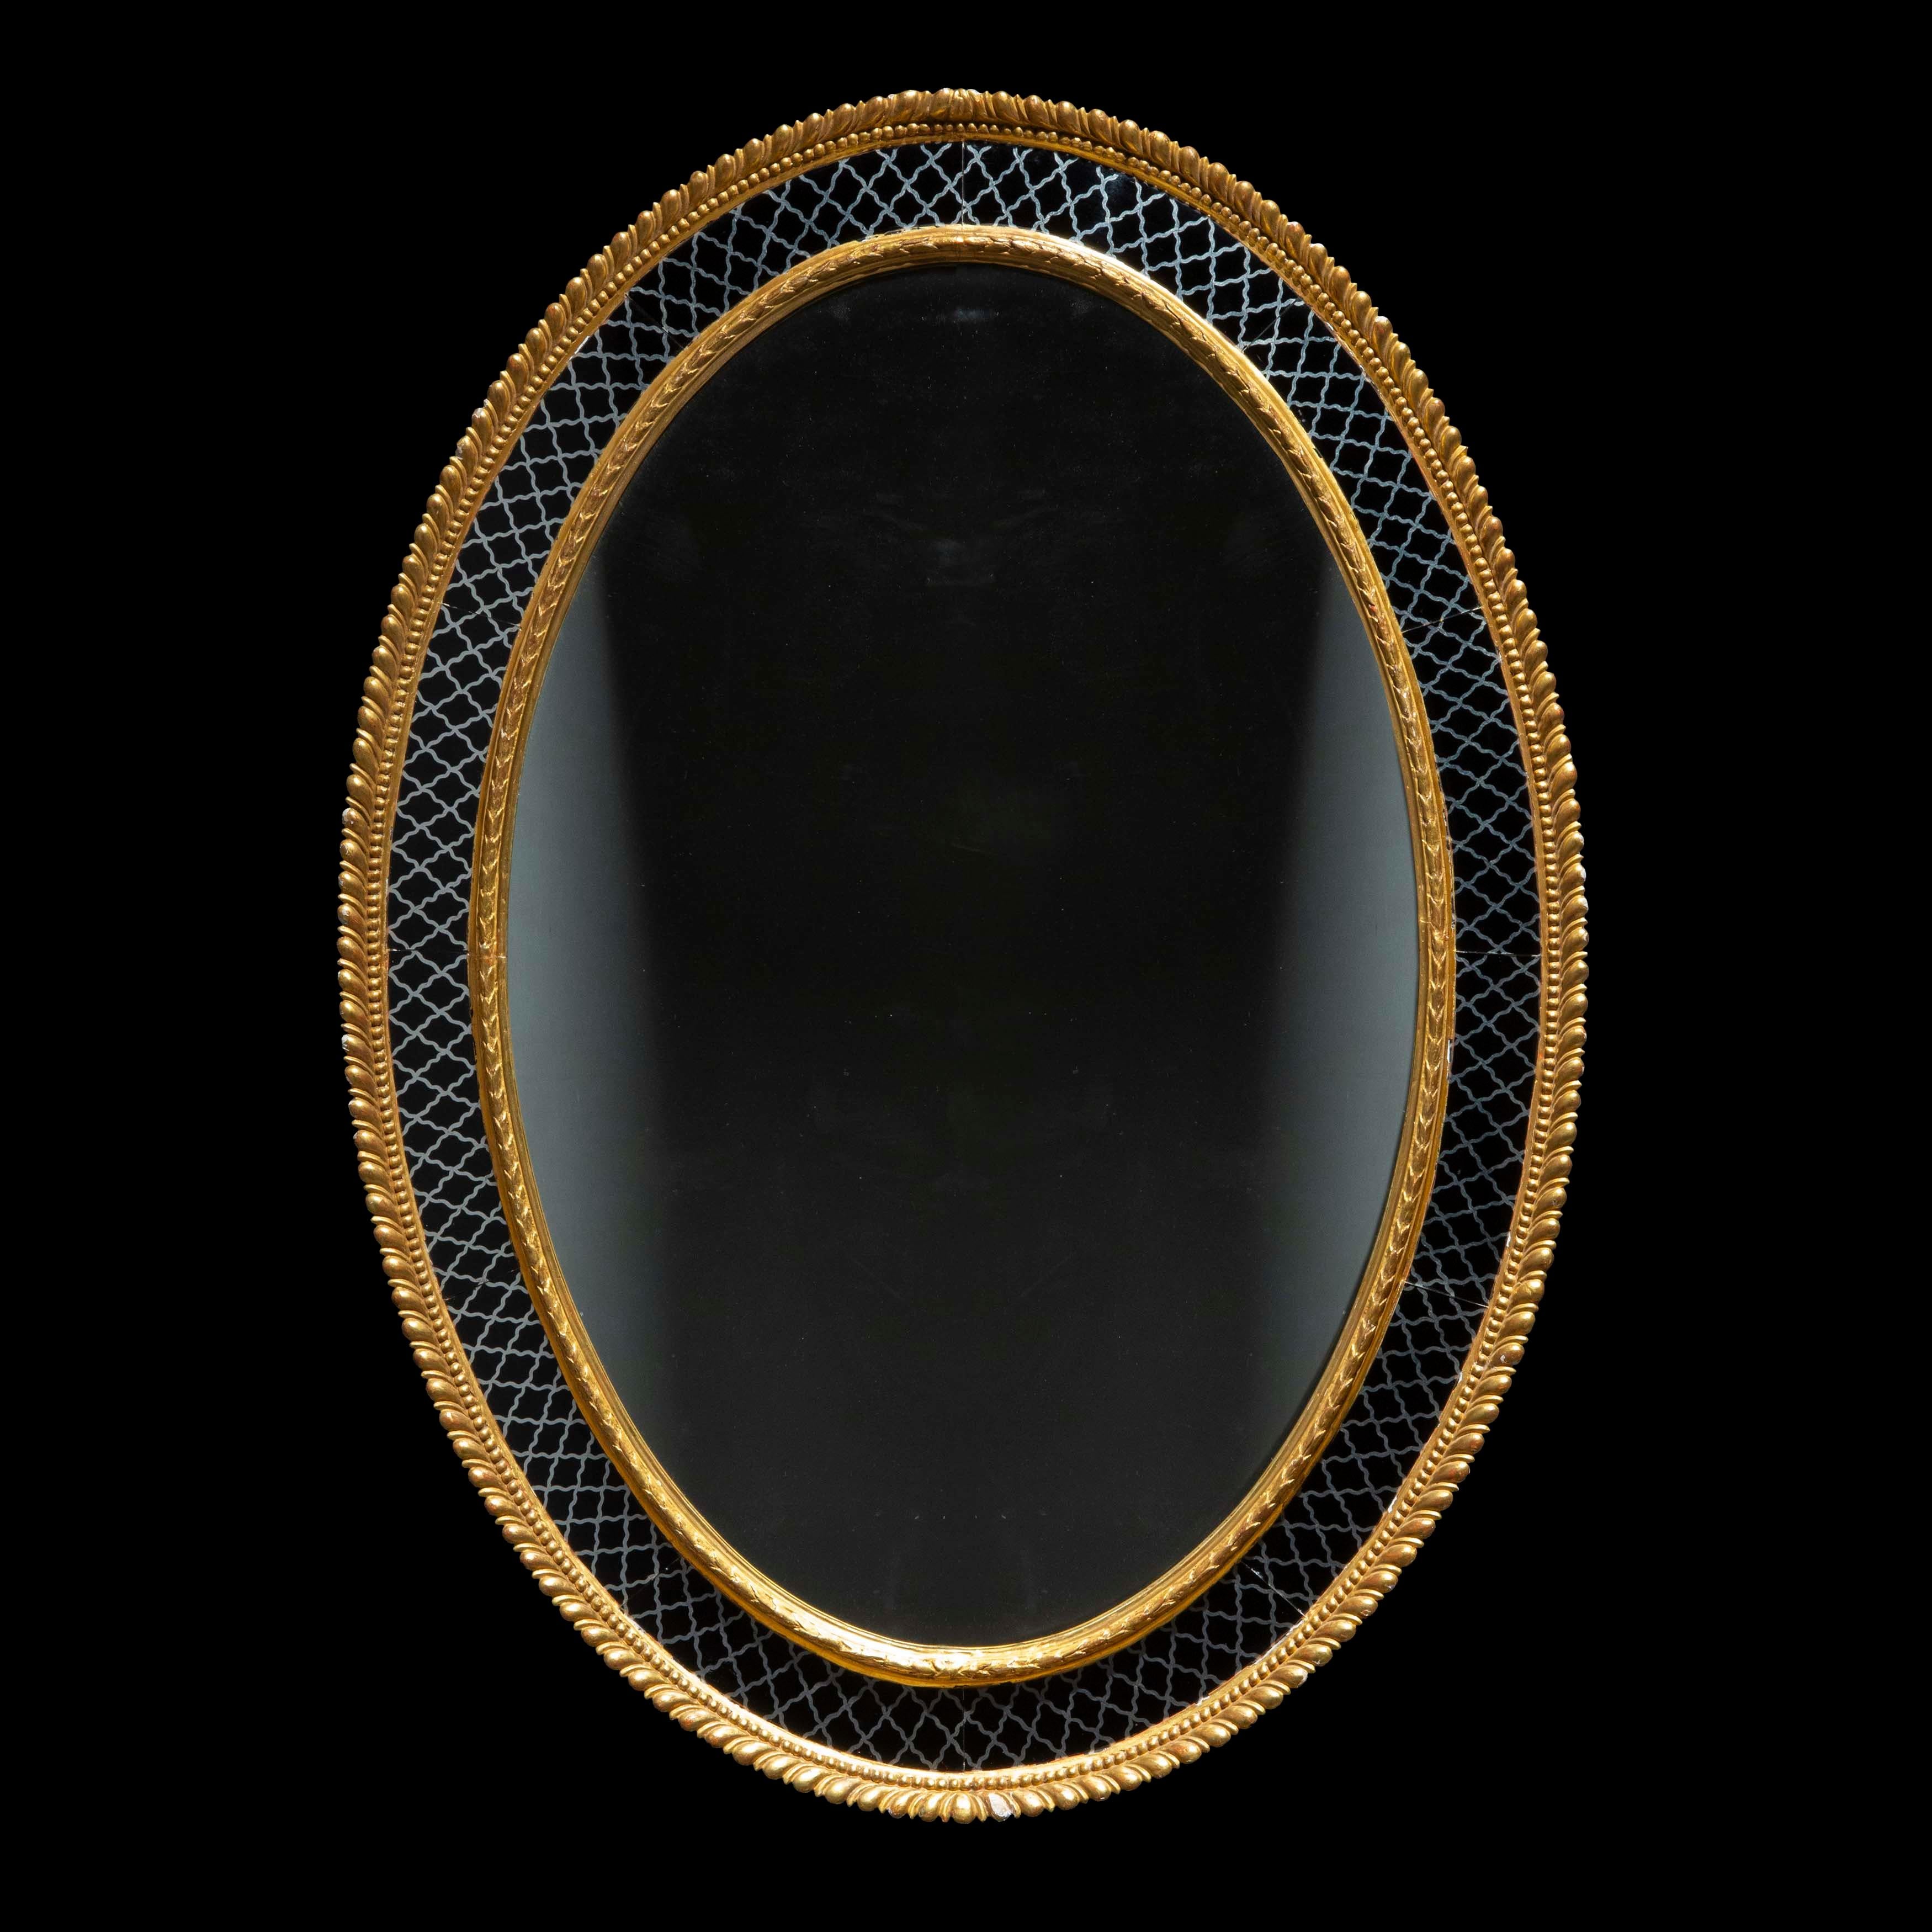 Regency Oval Gilt Wall Mirror with Églomisé Border For Sale 3